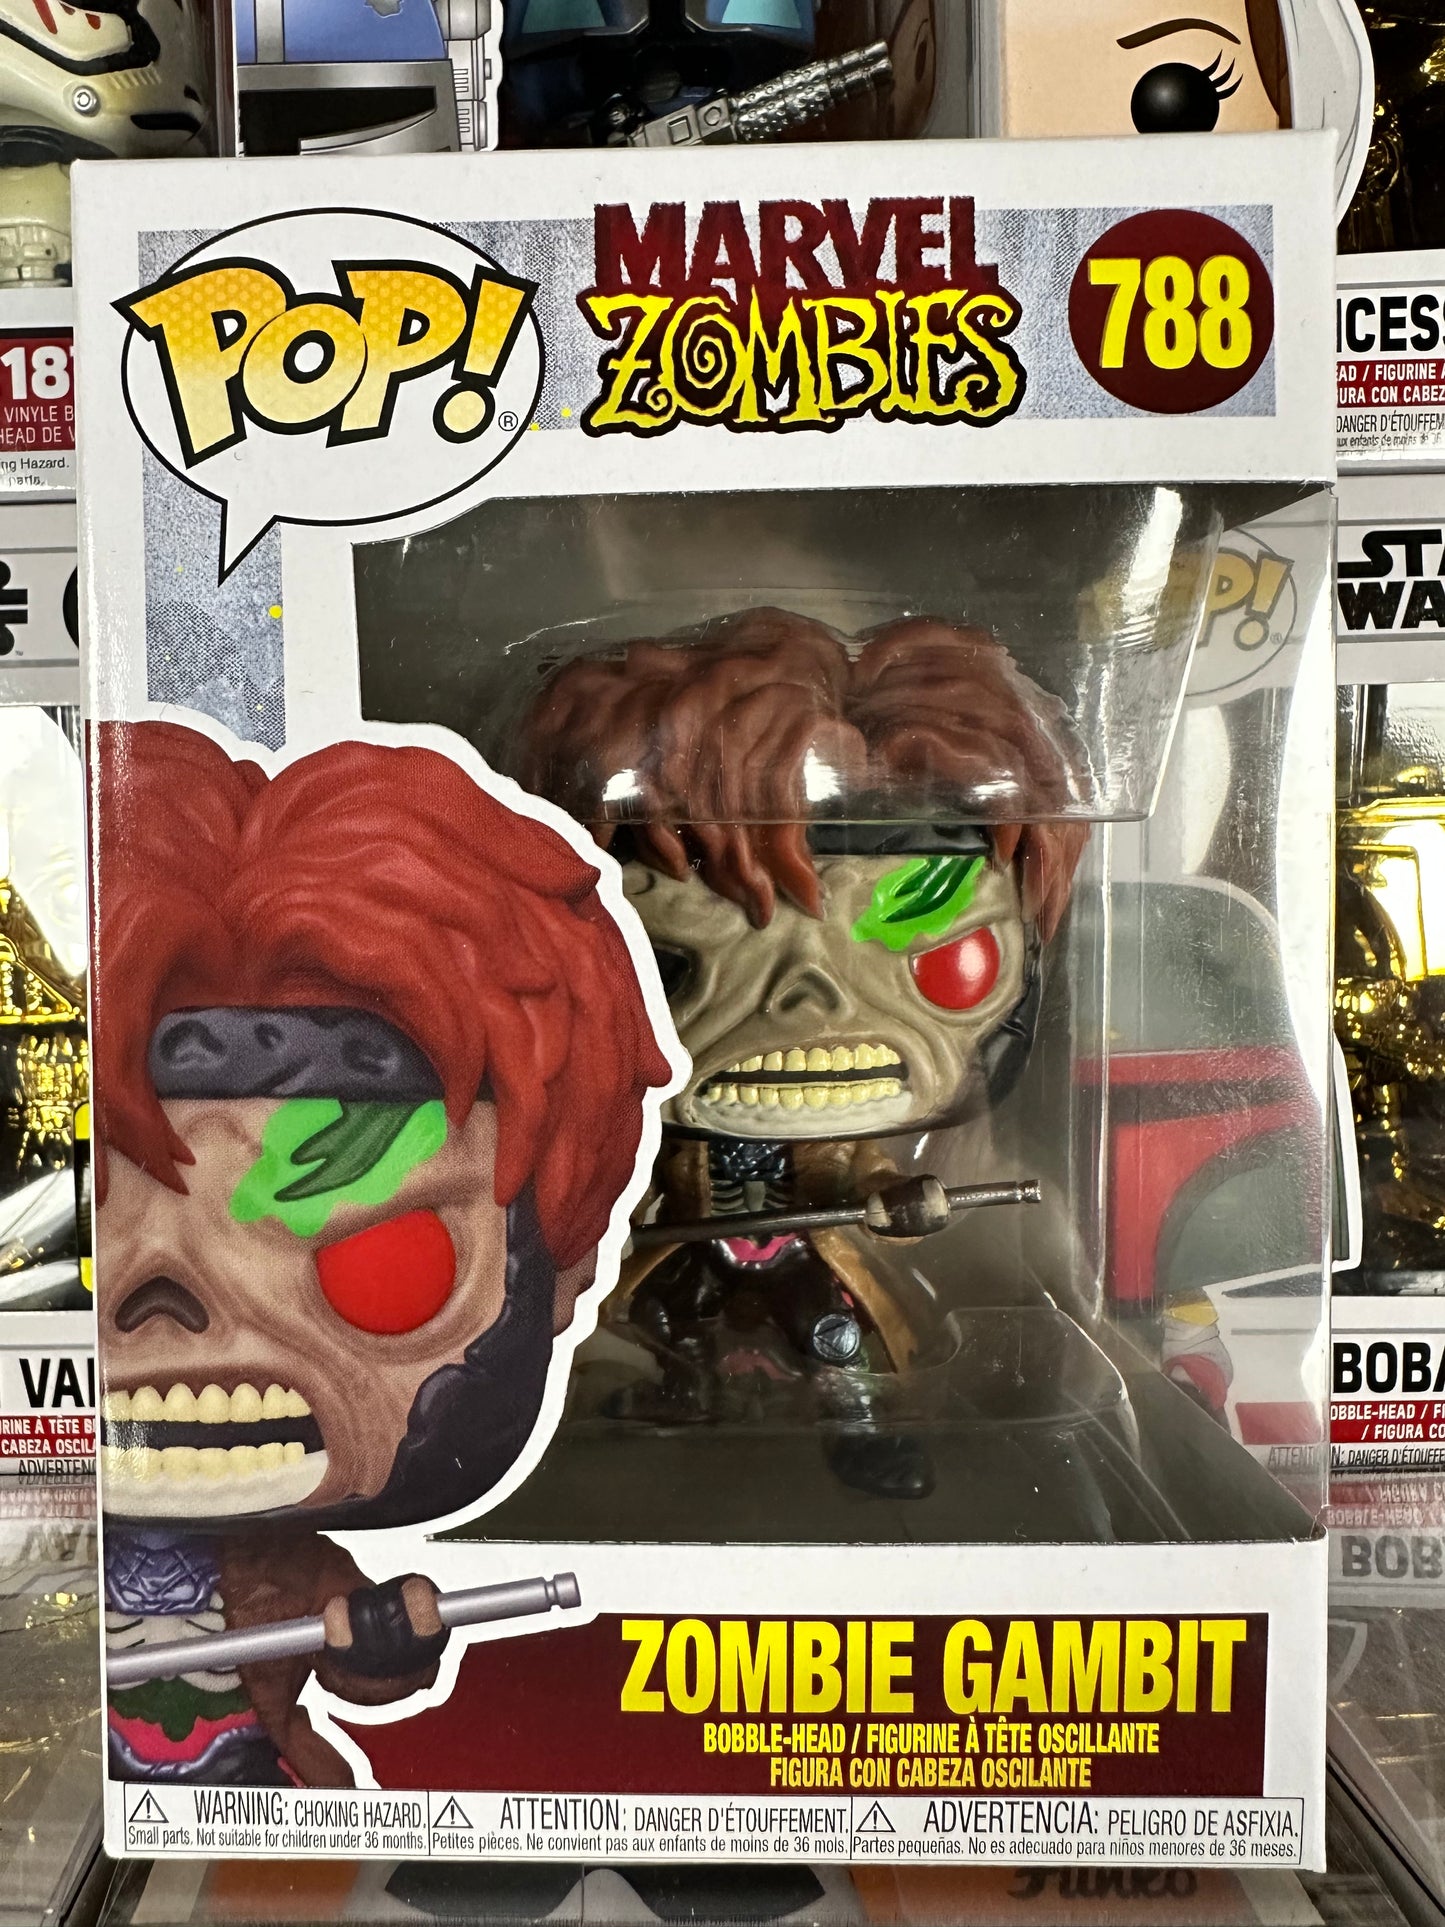 Marvel Zombies - Zombie Gambit (788)